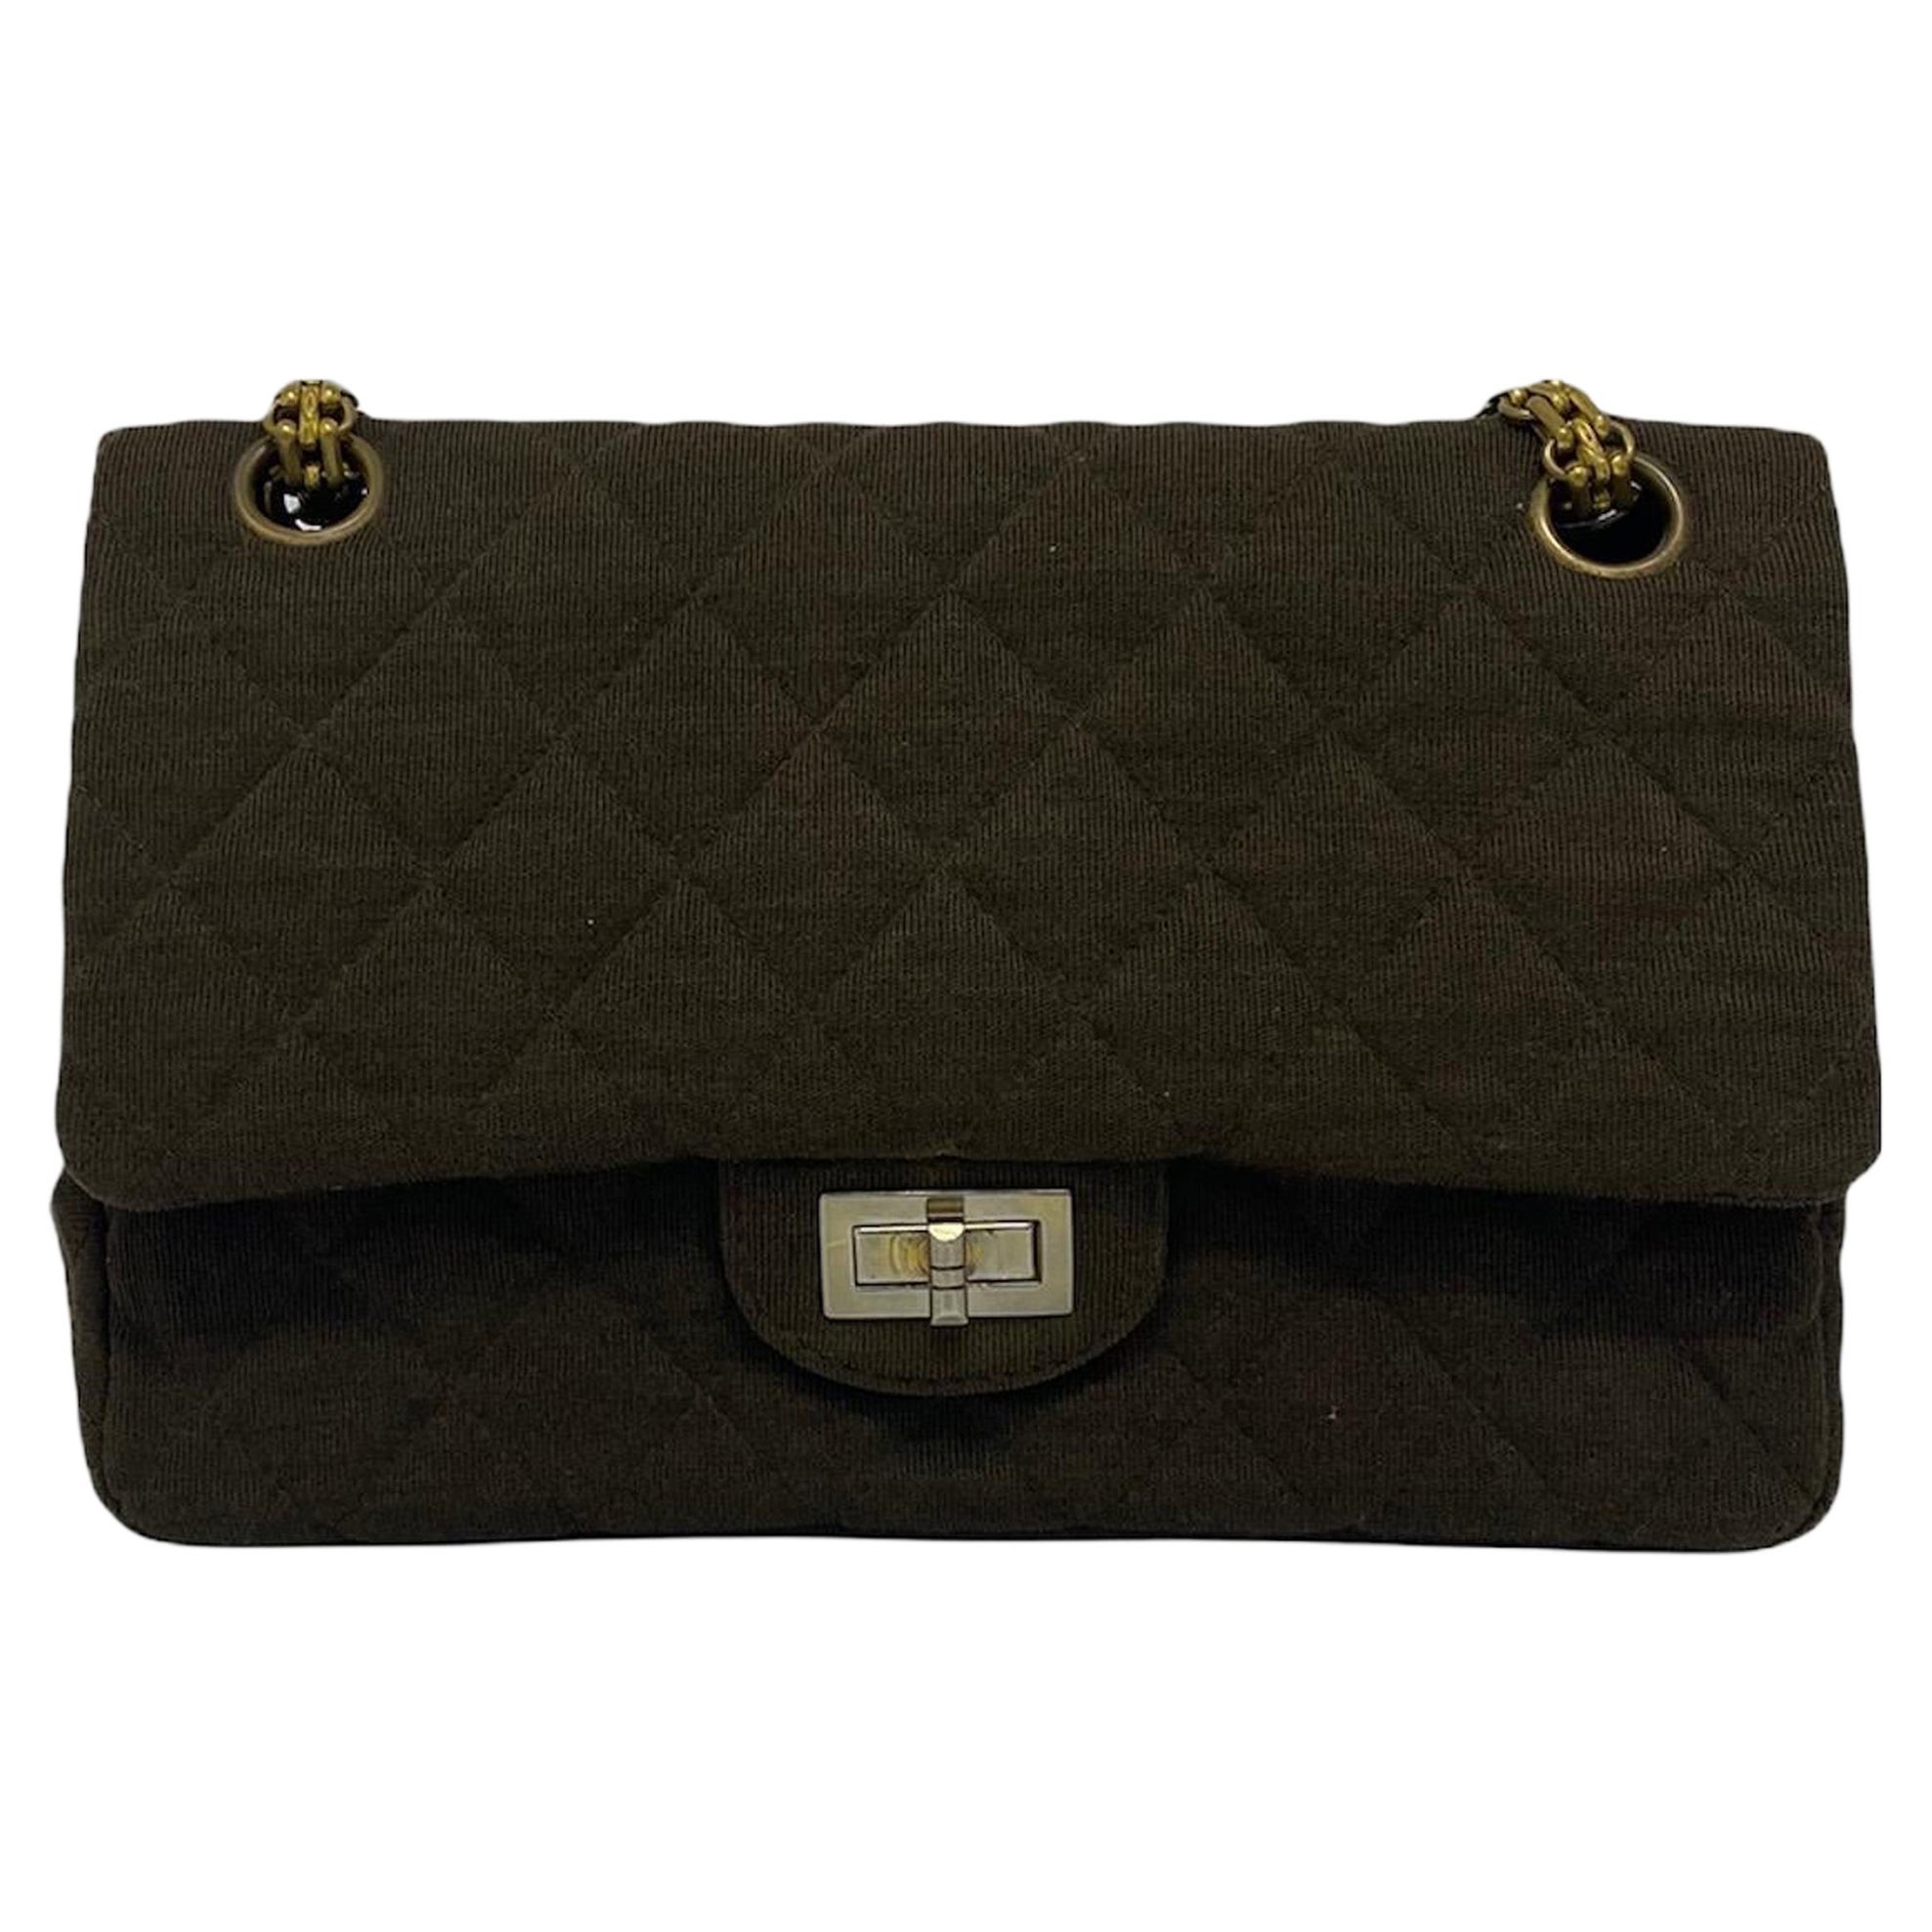 Chanel Brown Fabric 2.55 Bag Shoulder Bag